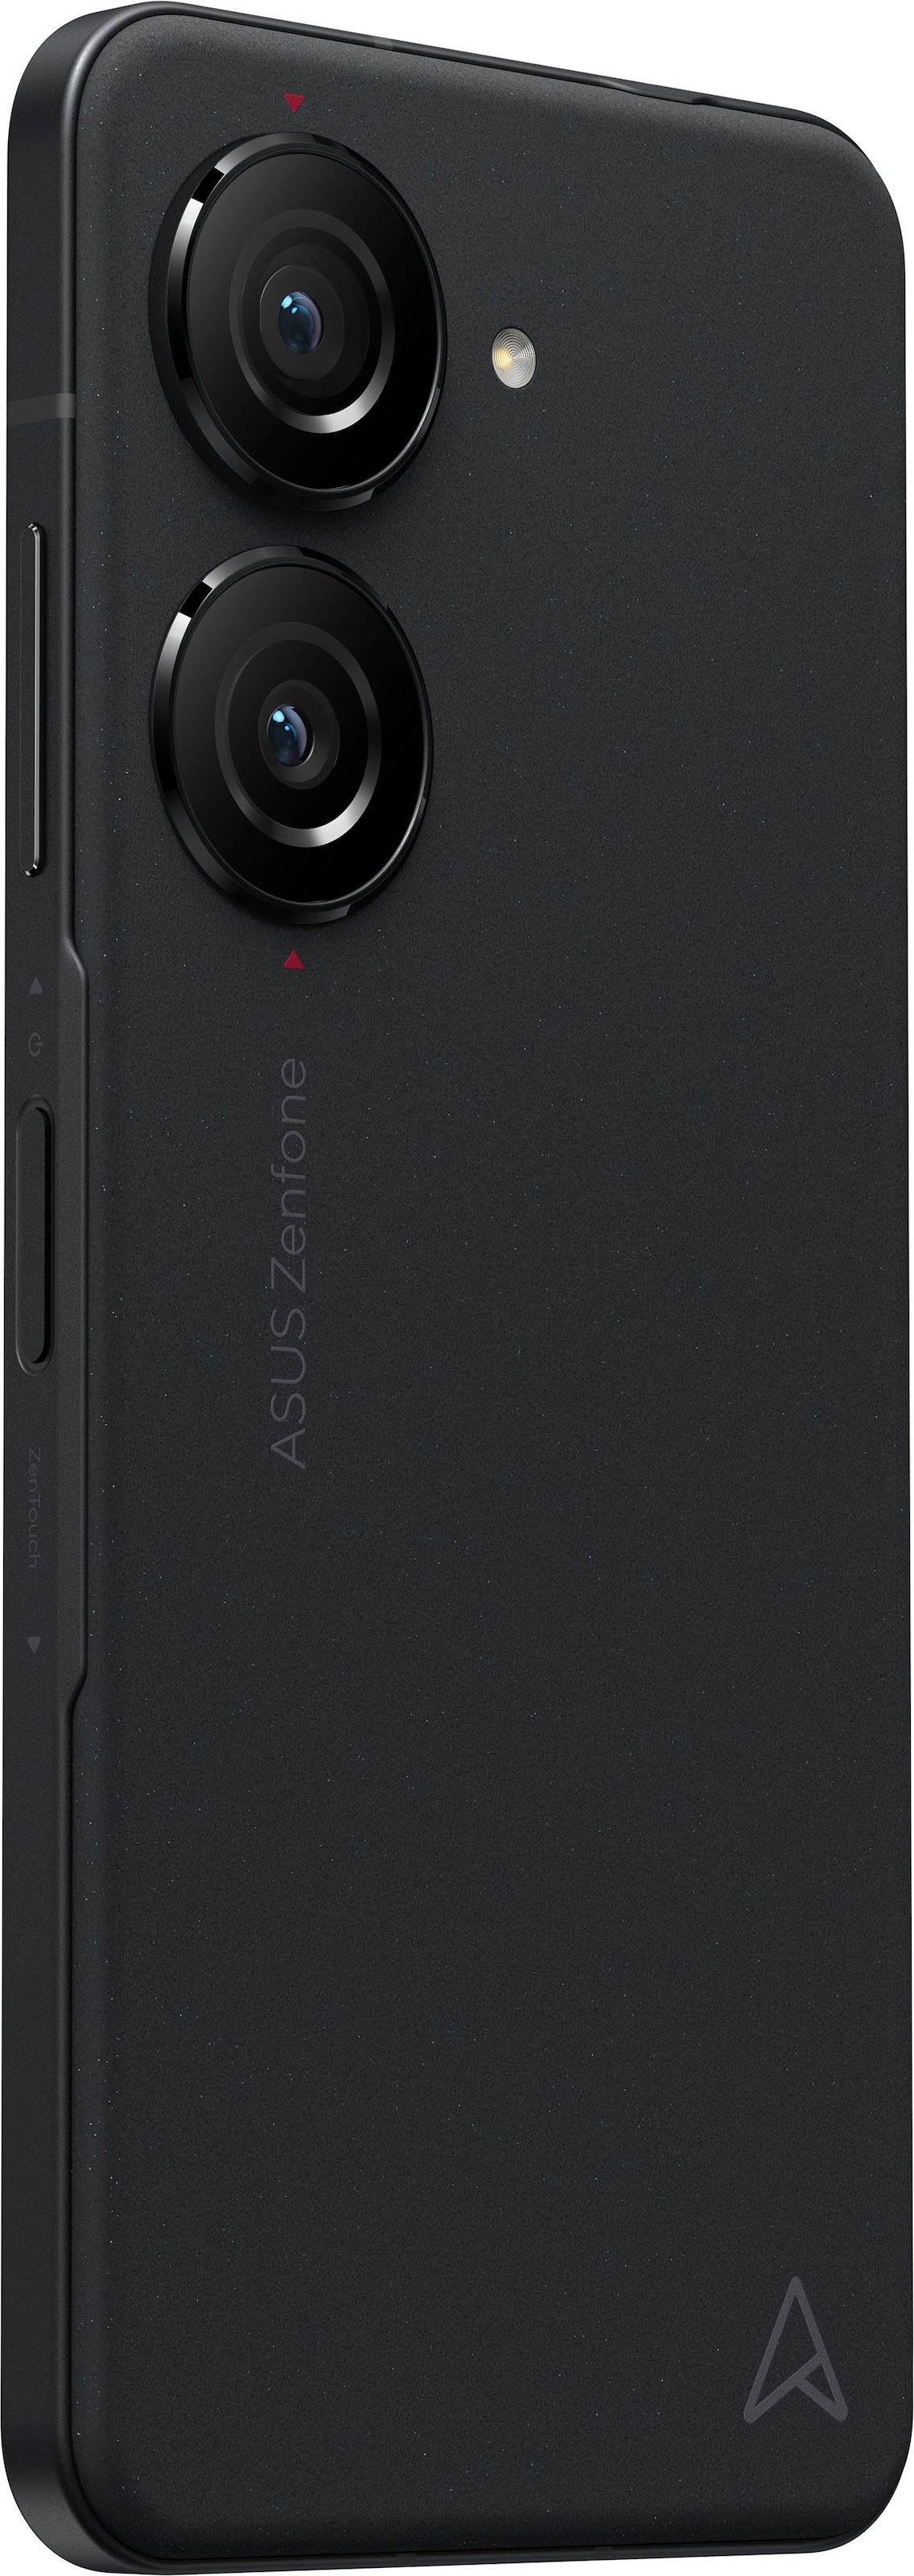 Asus Smartphone »ZENFONE 10«, schwarz, 14,98 cm/5,9 Zoll, 128 GB Speicherplatz, 50 MP Kamera